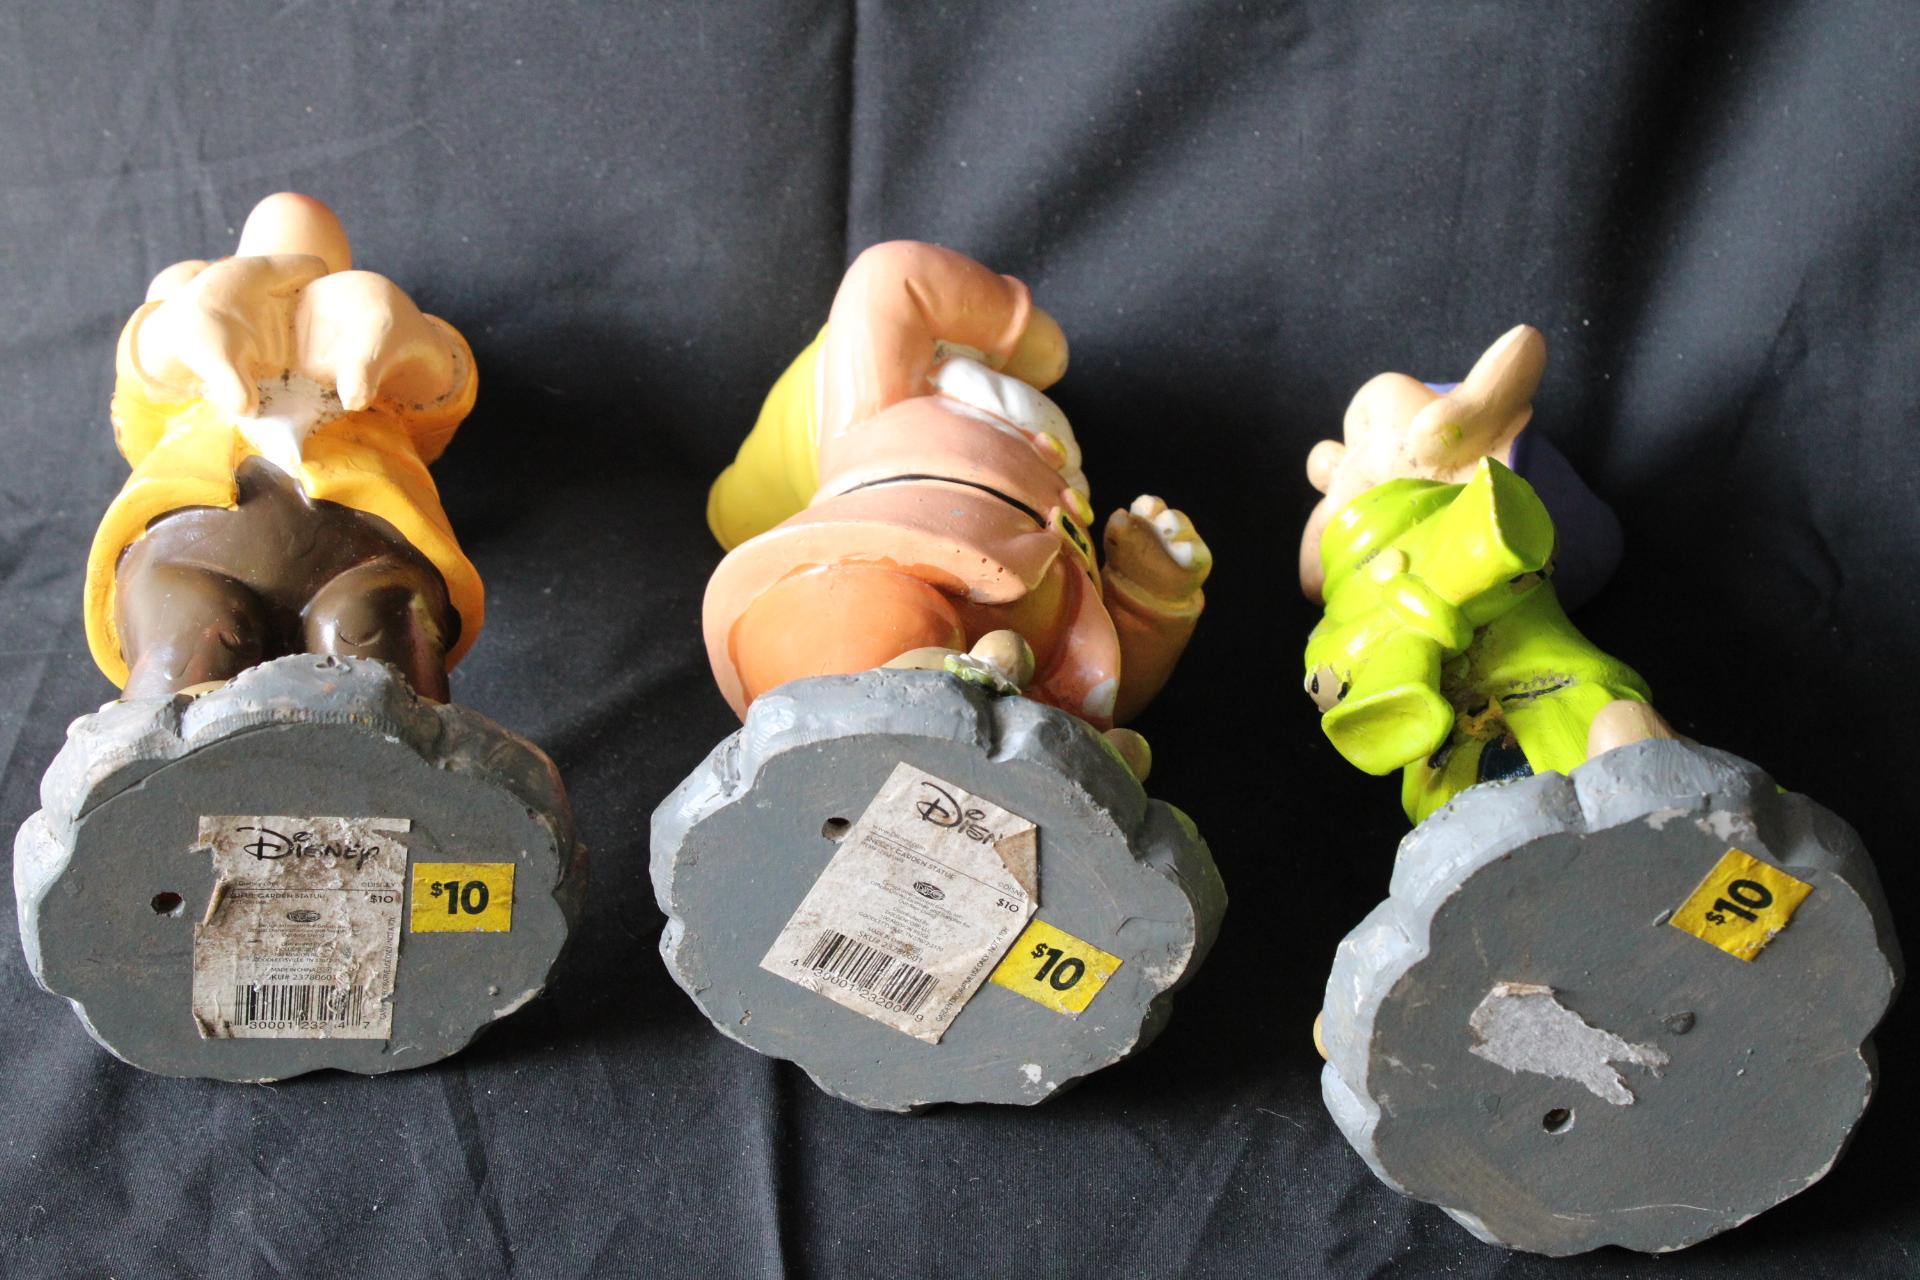 3 Dwarfs - Disney Figurines.